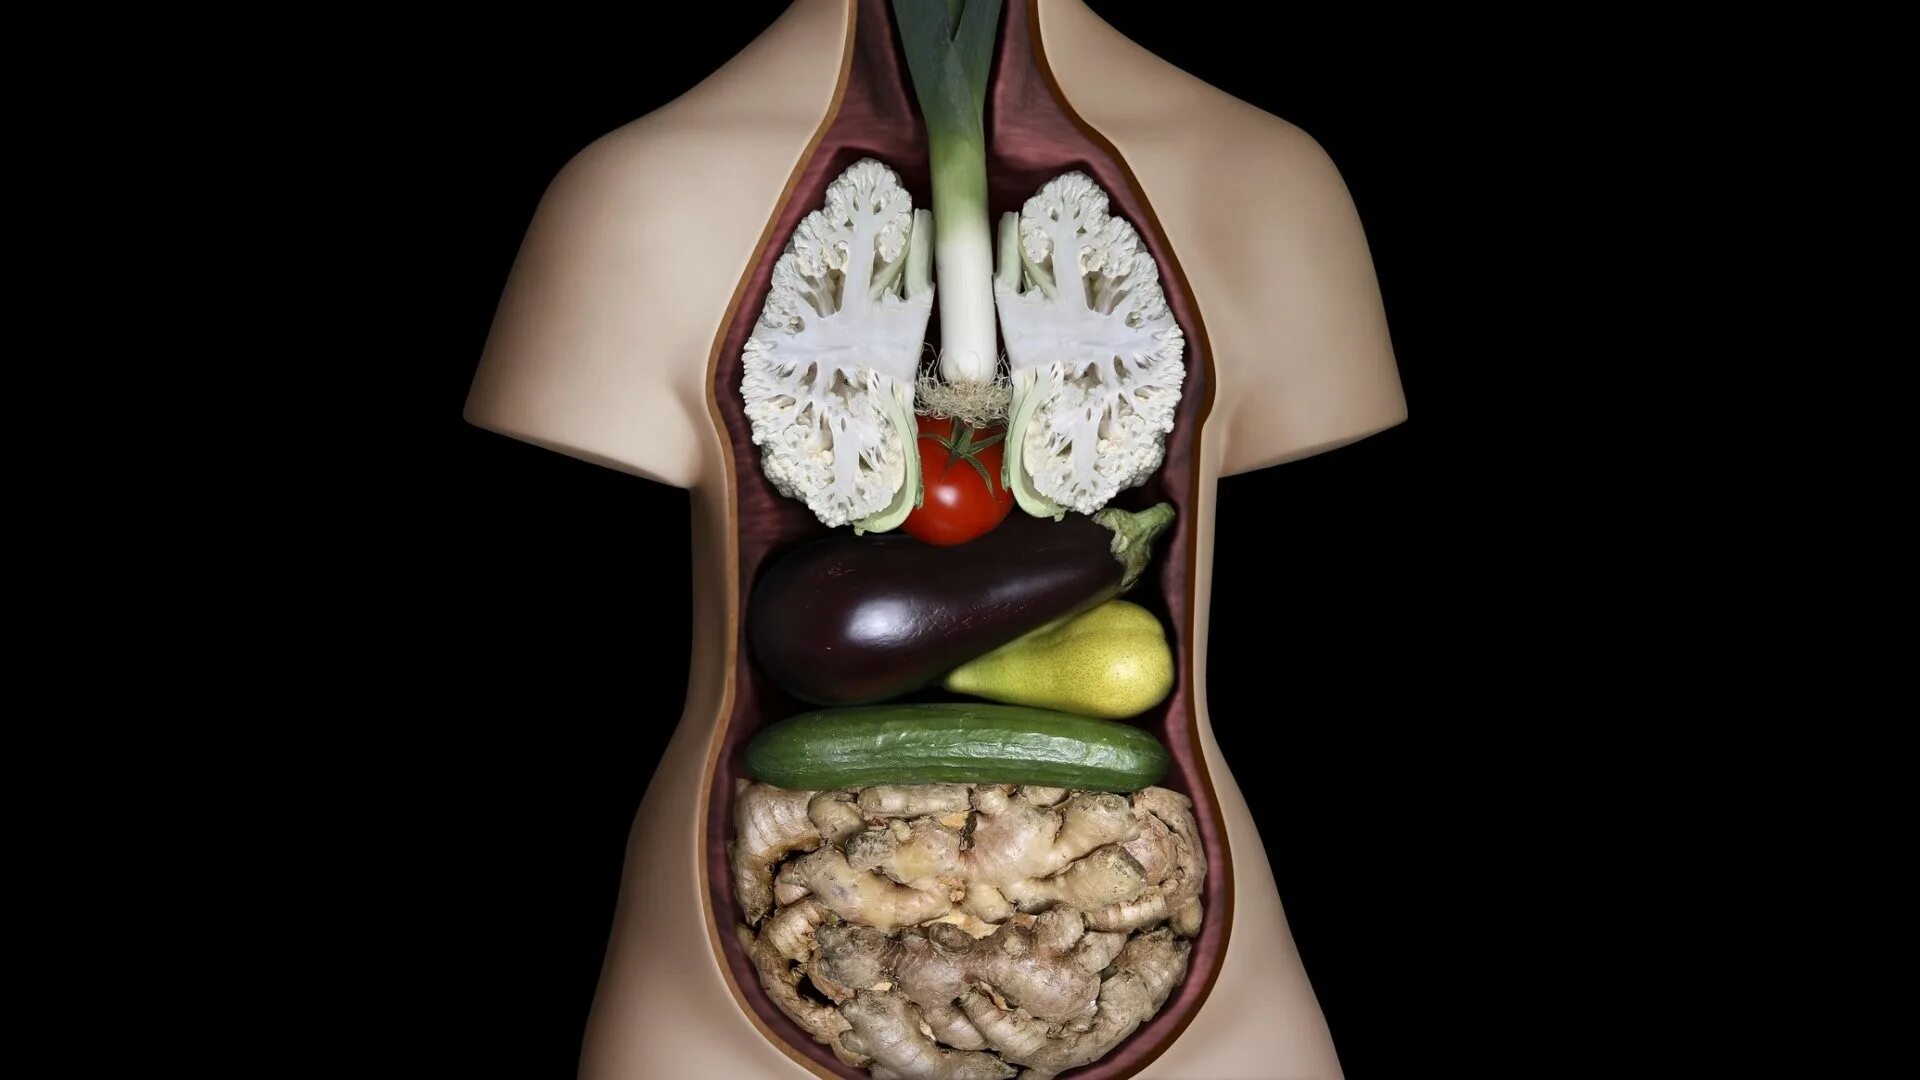 Организм на фотографии является. Еда для организма человека. Здоровые внутренние органы. Здоровое пищеварение. Питание организмов.